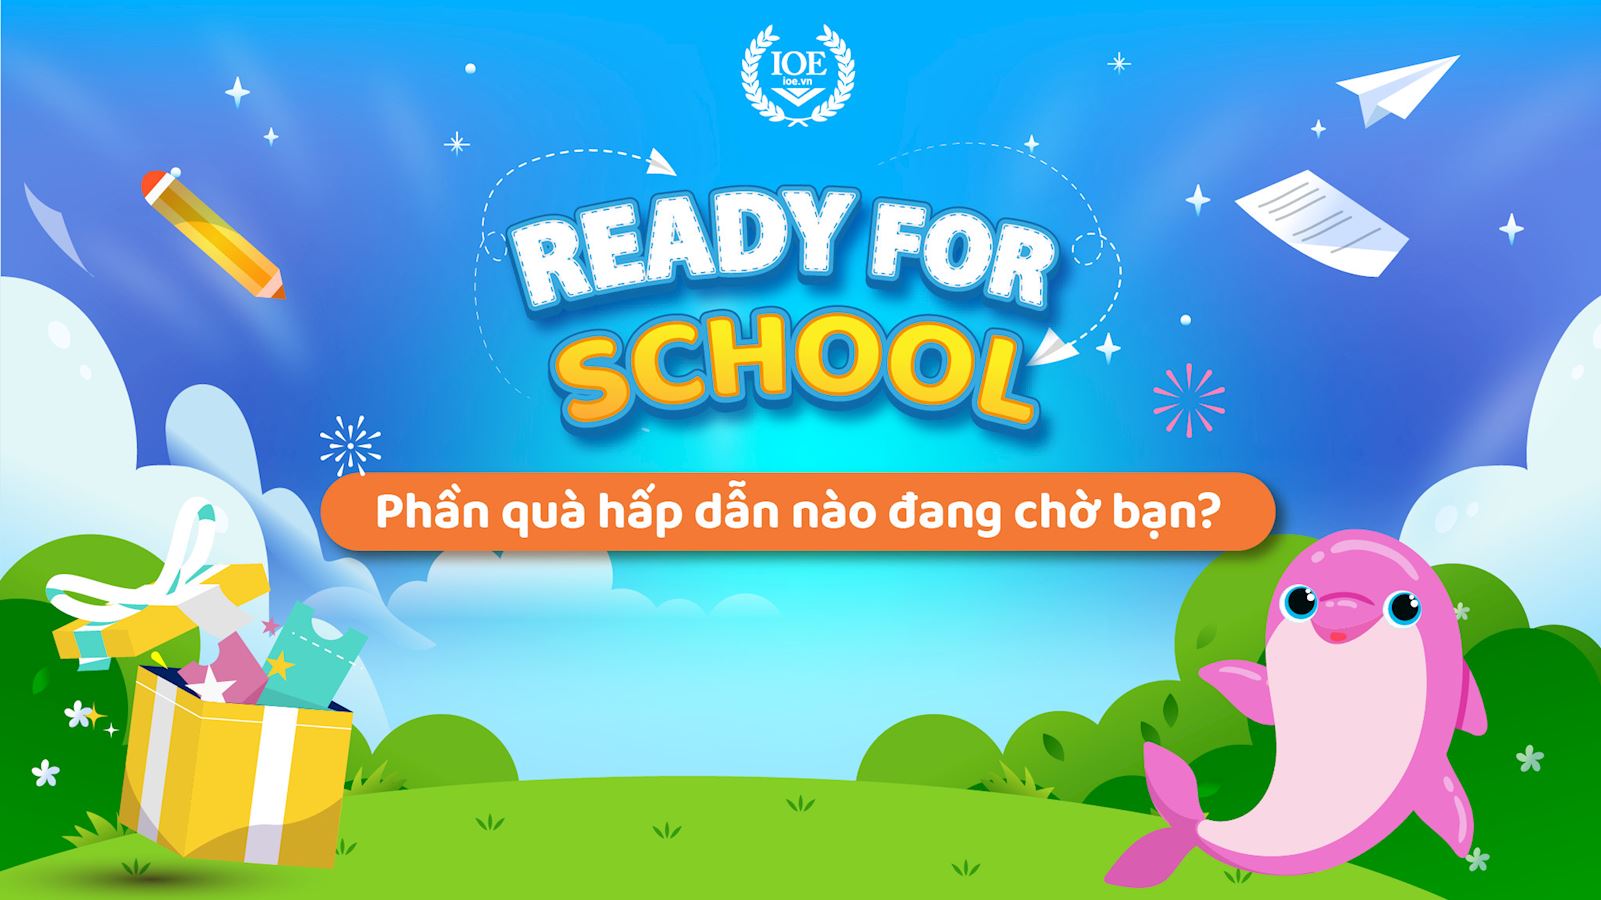 Ready for School 2023: Phần quà hấp dẫn nào đang chờ bạn?